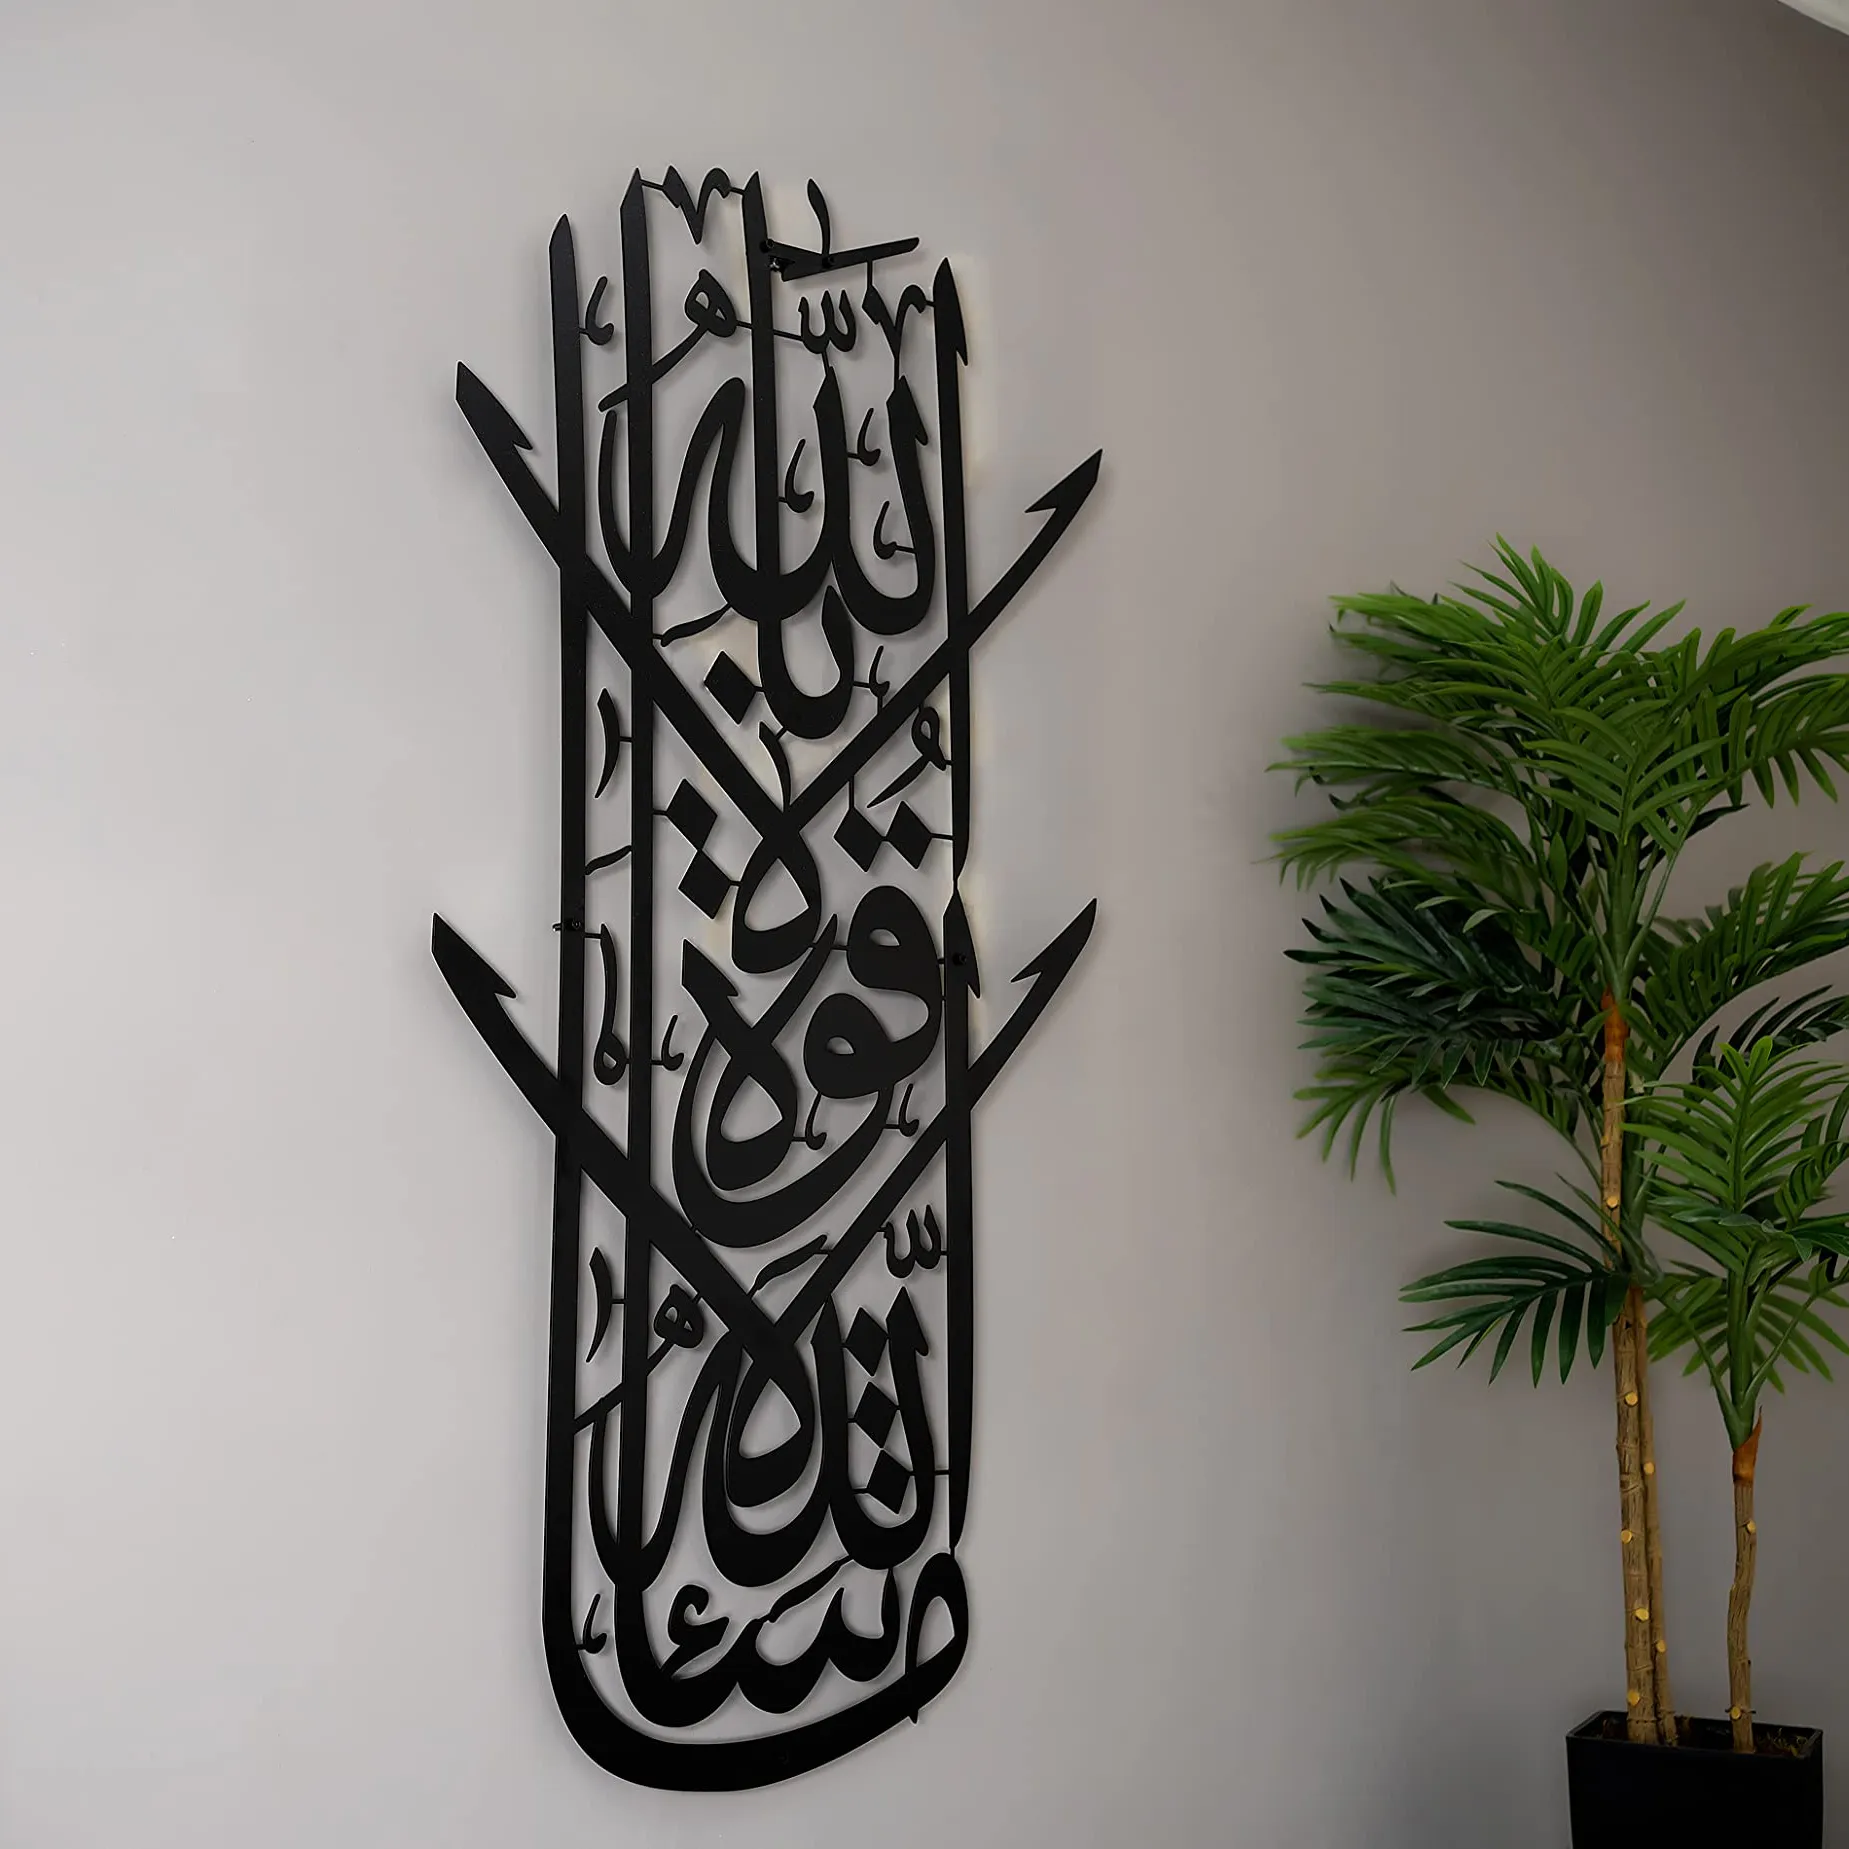 فن جداري إسلامي فريد من نوعه بمنتج جديد ديكور منزلي هدية إسلامية حديثة فاخرة ديكور إسلامي معدني مخصص